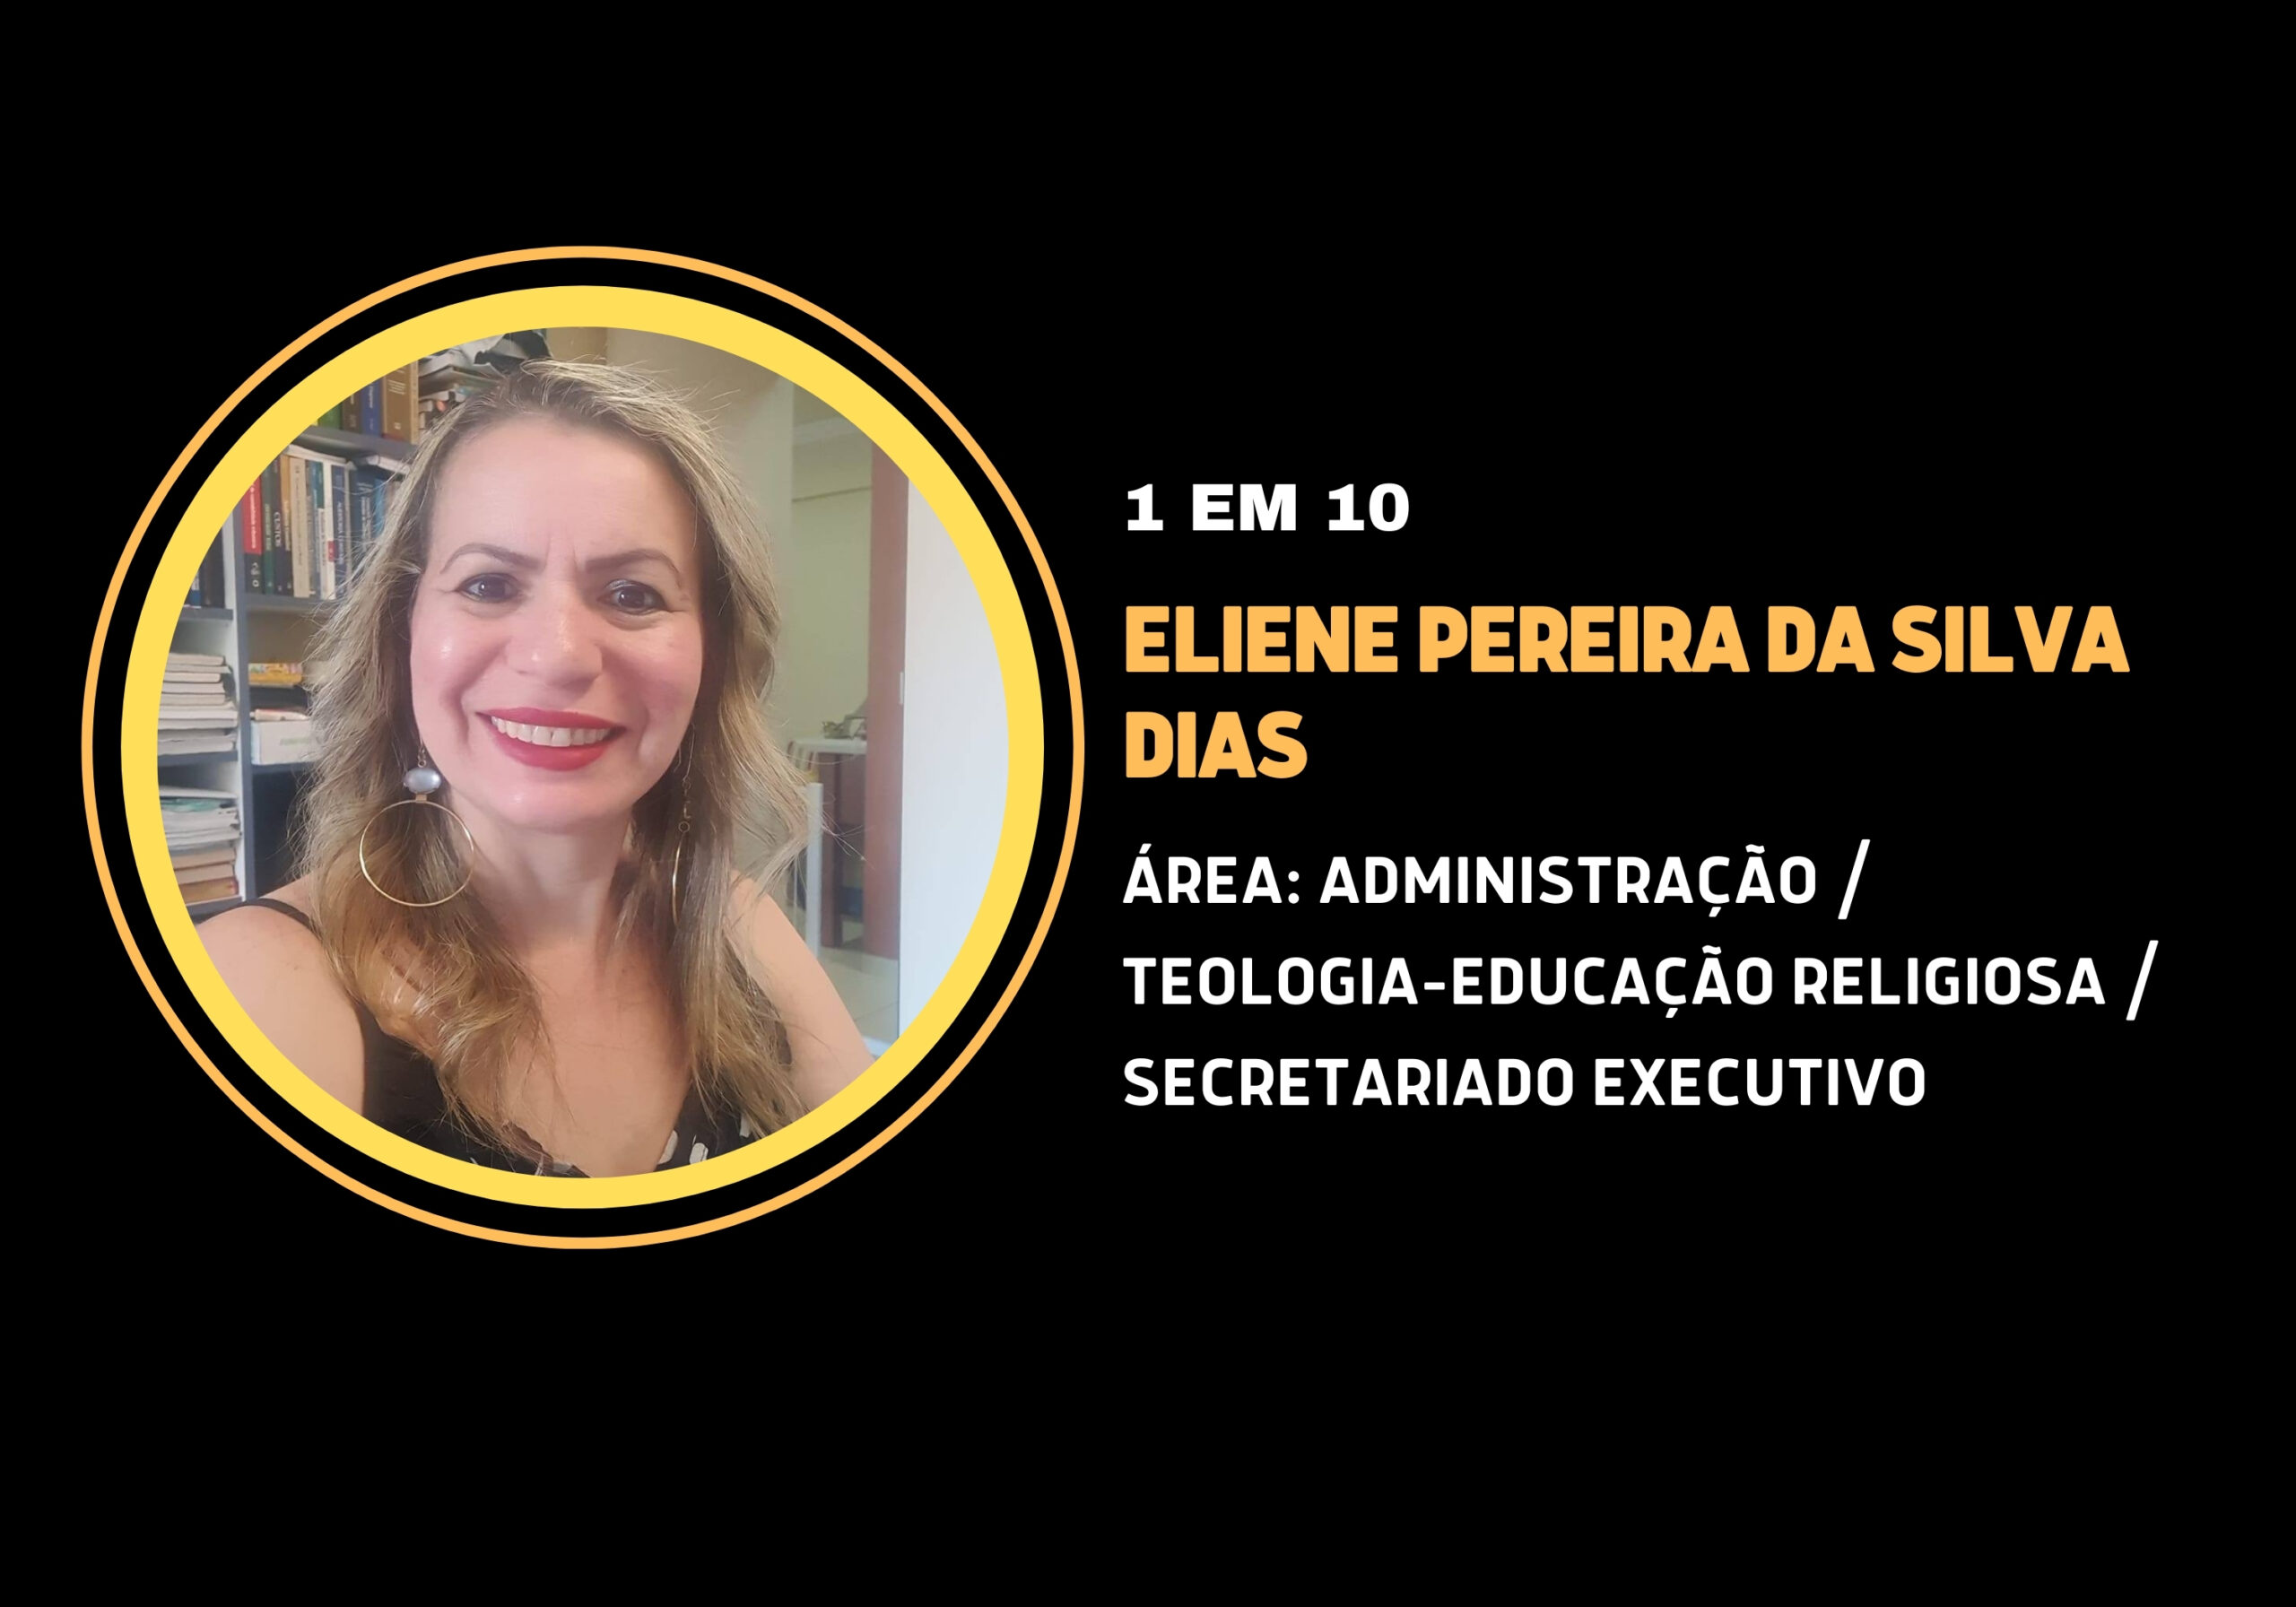 Eliene Pereira da Silva Dias | 1 em 10